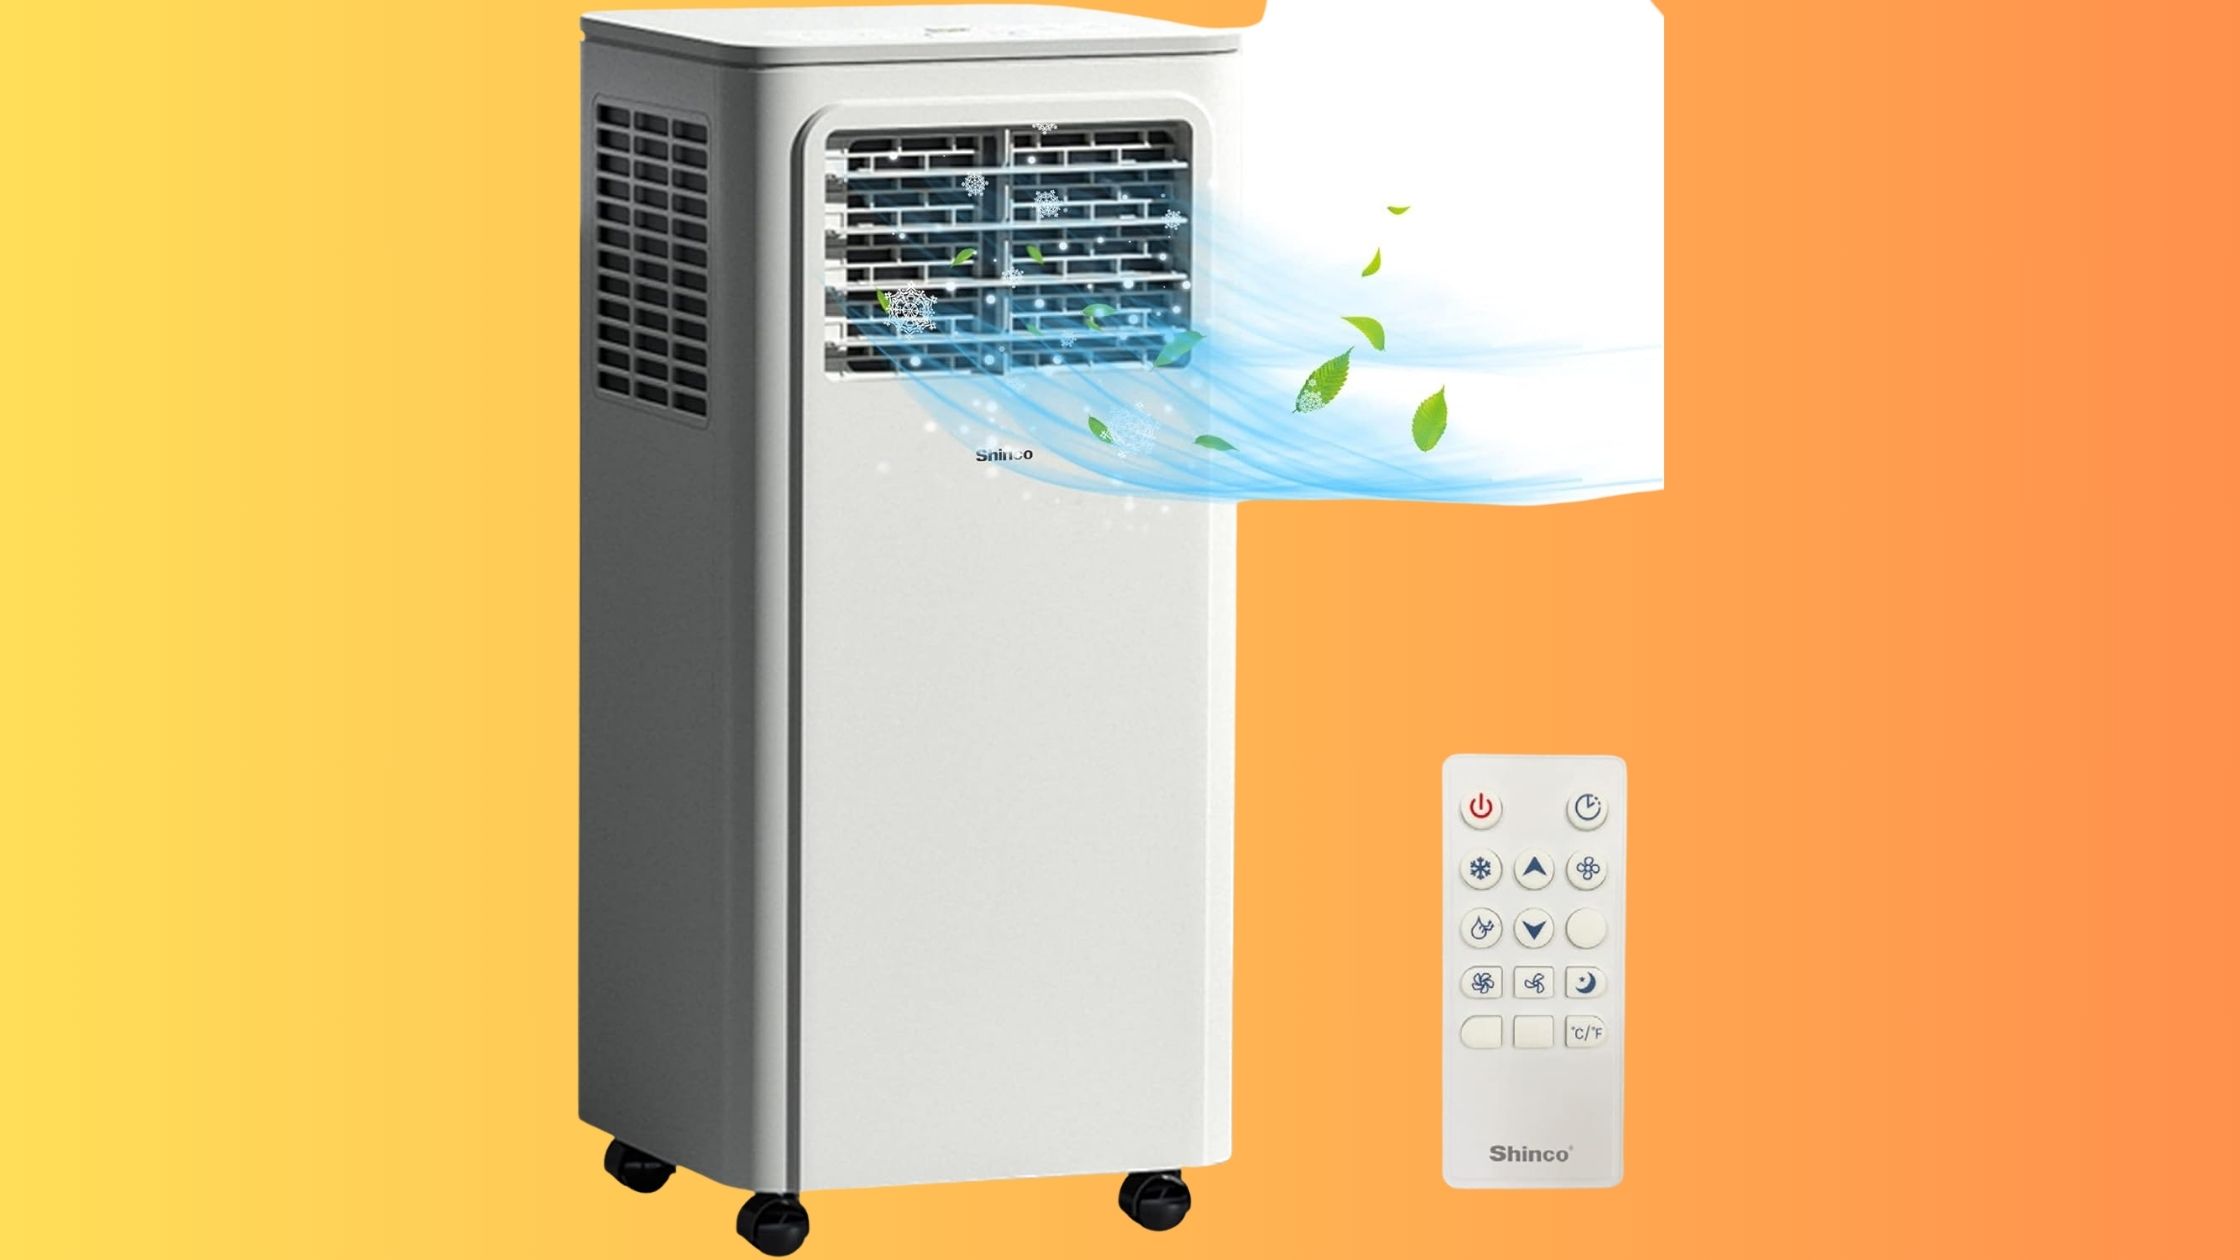 Le climatiseur mobile SHINCO : à saisir d'urgence pour lutter contre la chaleur estivale © Amazon